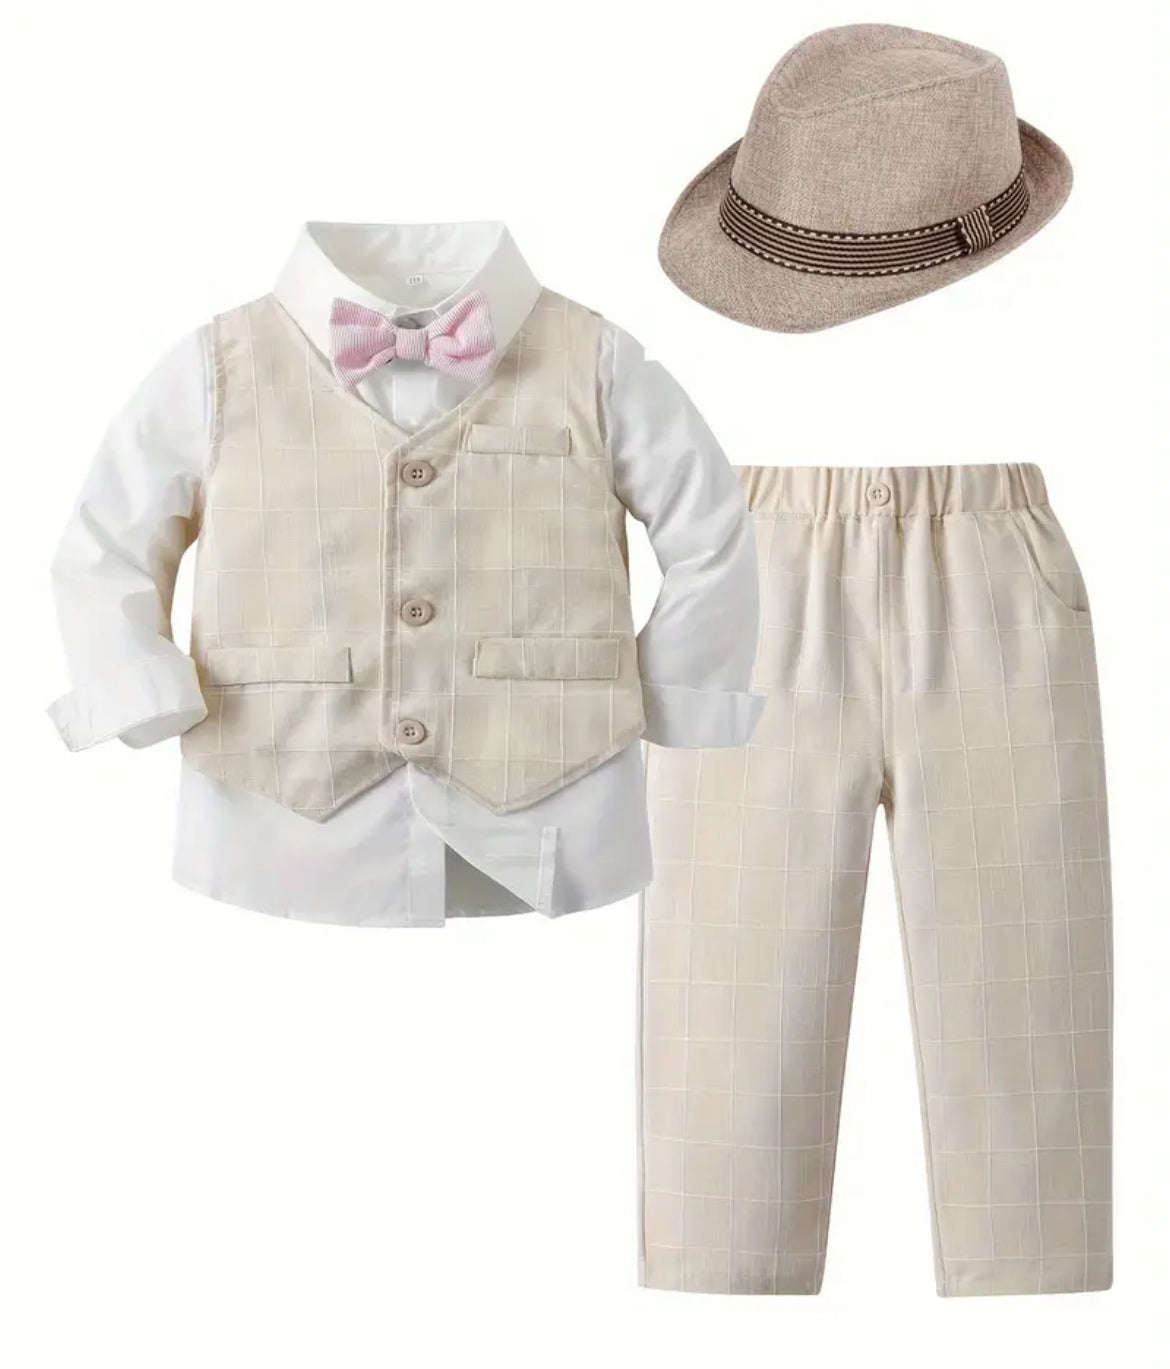 4pcs Boys Formal Gentleman Outfits, Long Sleeve Bowtie Shirt, Pants, Vest & Hat Set